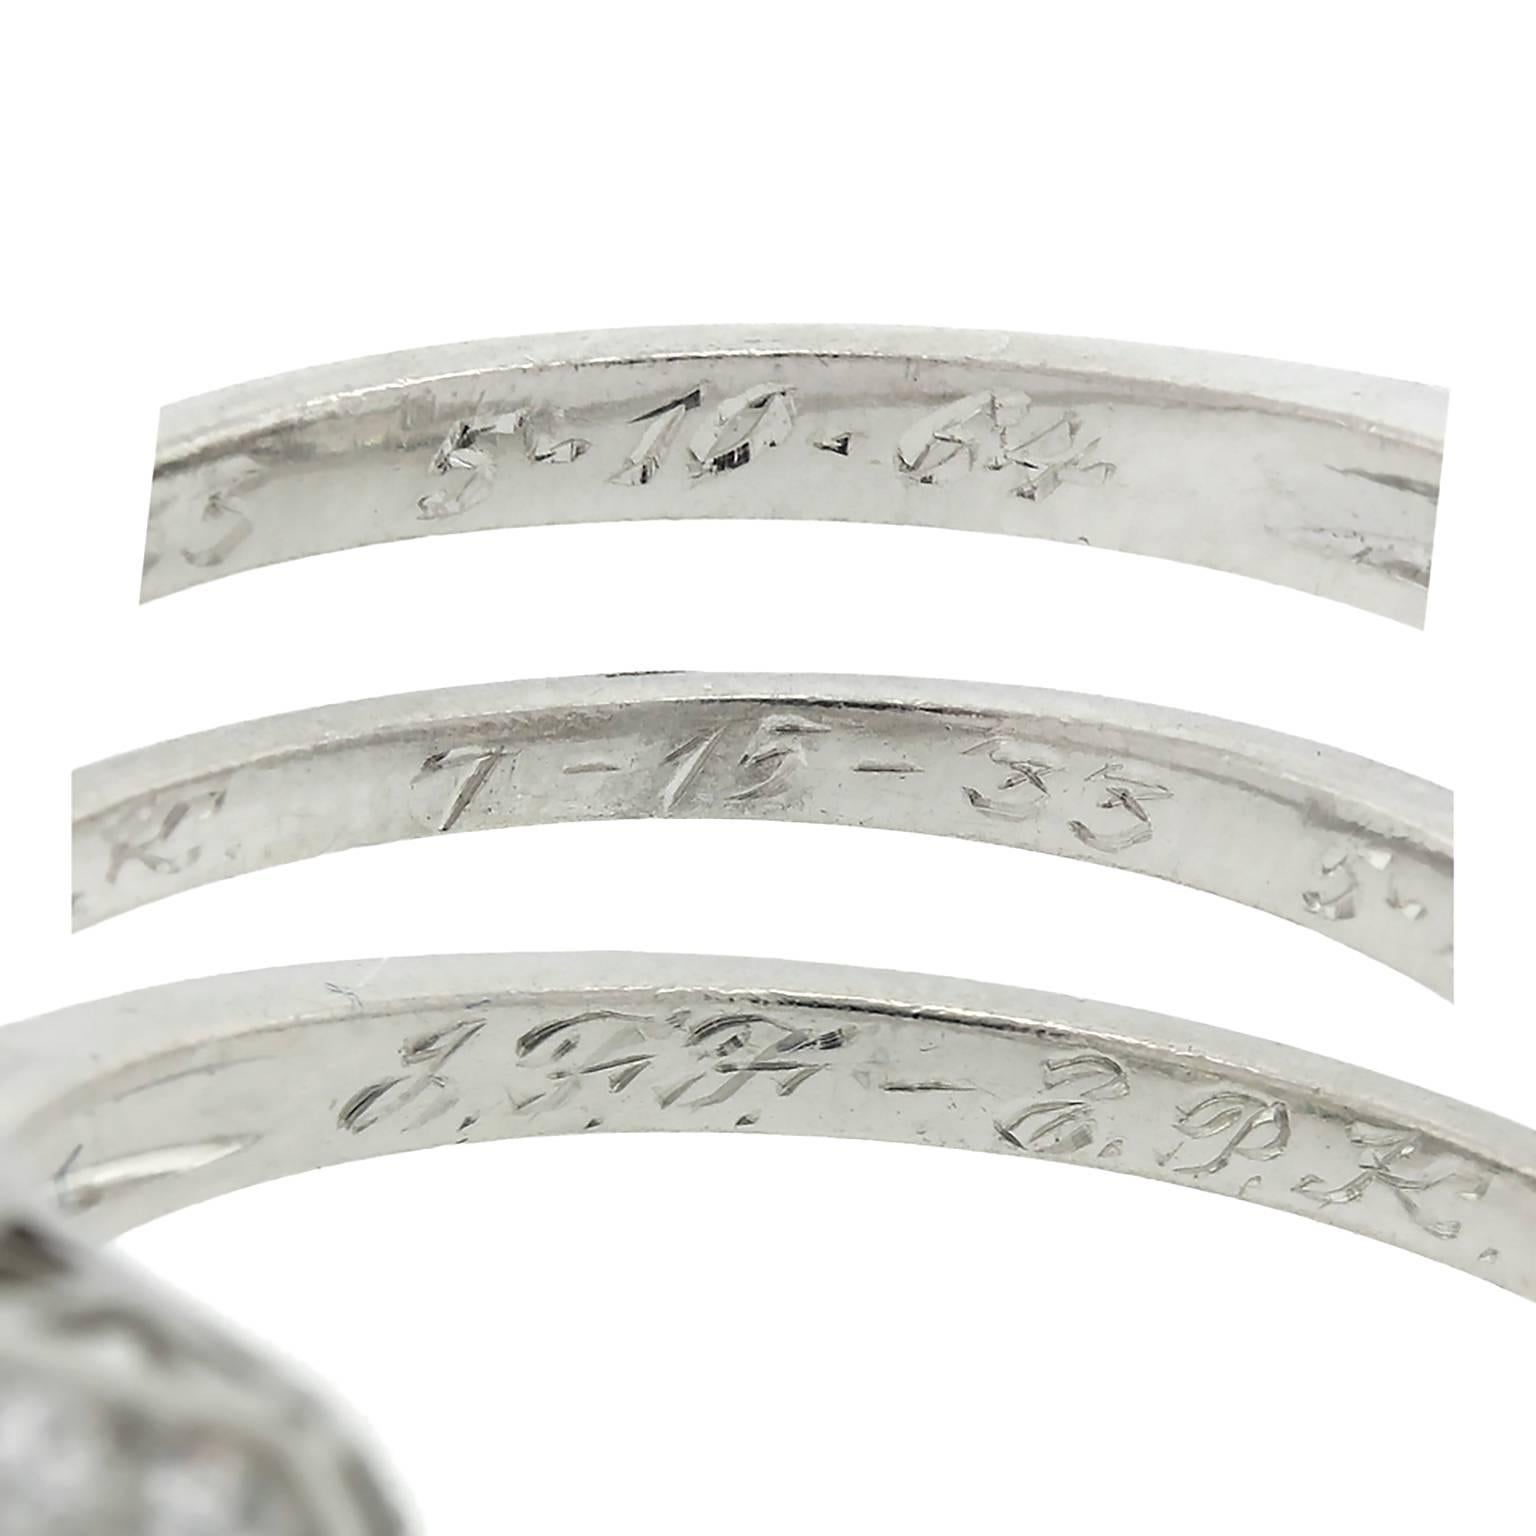 Art Deco Diamond Platinum Ring 1